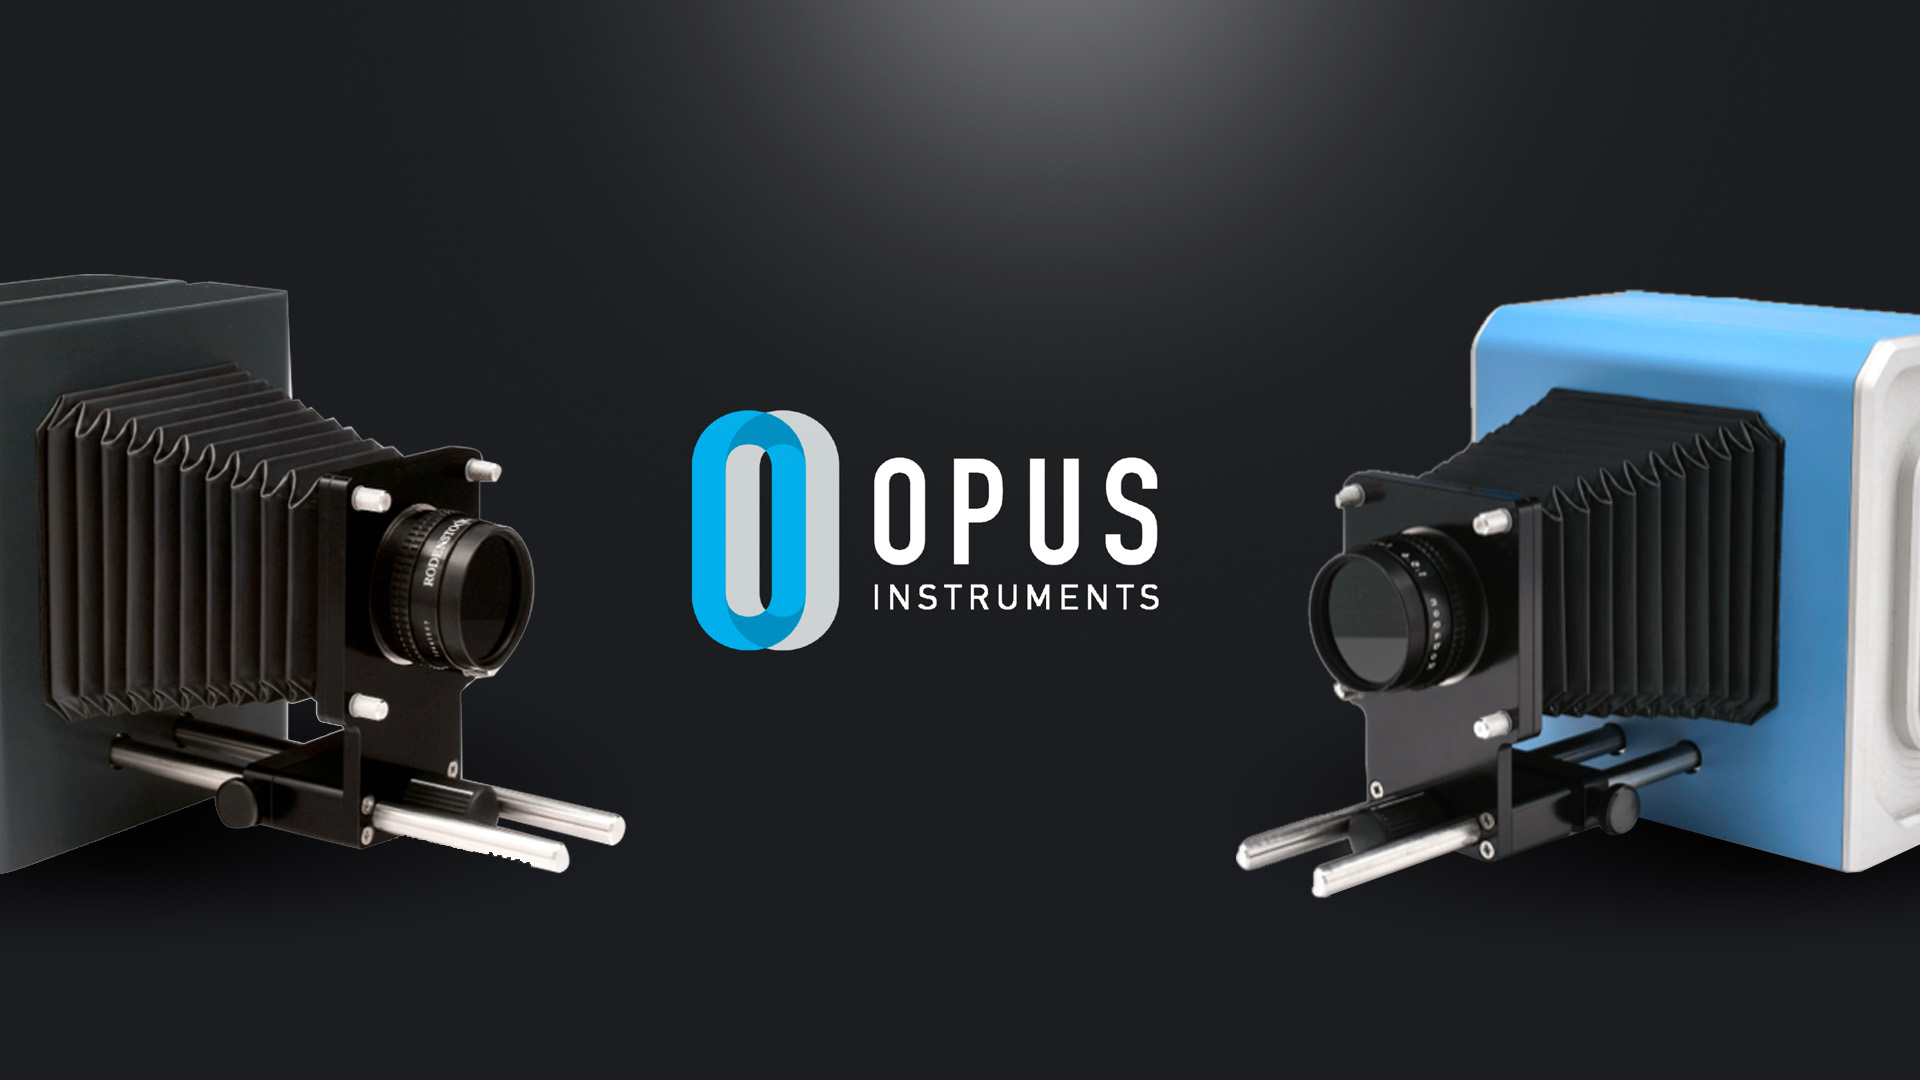 Opus Instruments branding